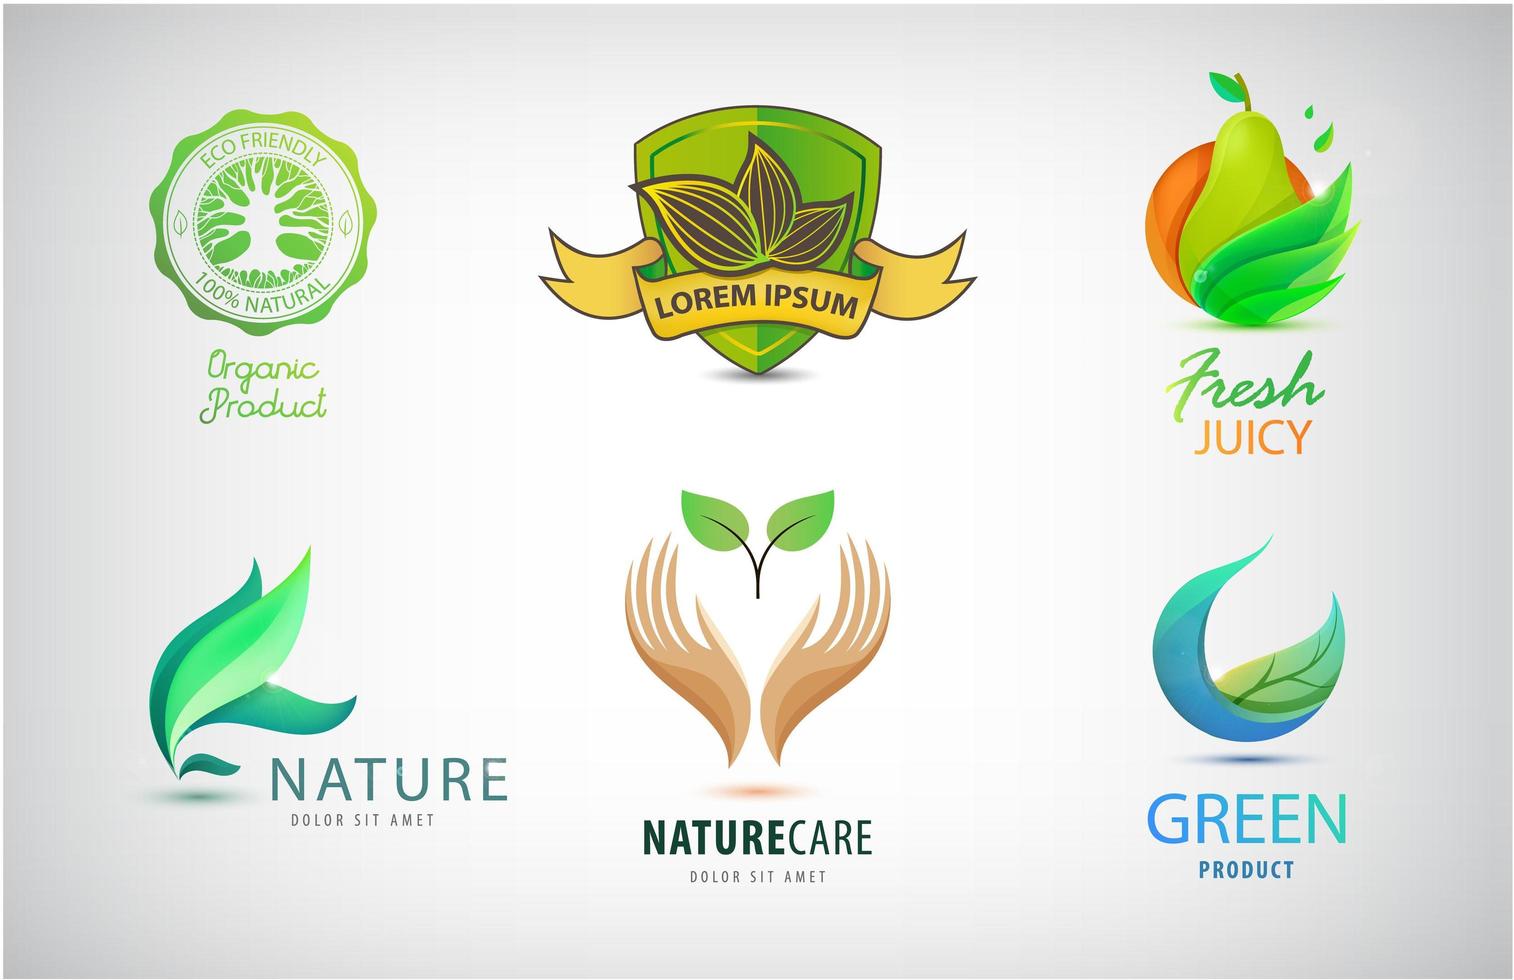 vector conjunto de logotipos de naturaleza, eco, medio ambiente. concepto de diseño de paisajismo. ilustraciones abstractas con árbol, hojas en el círculo. símbolo del tema del parque. plantilla de icono para negocios de jardinería